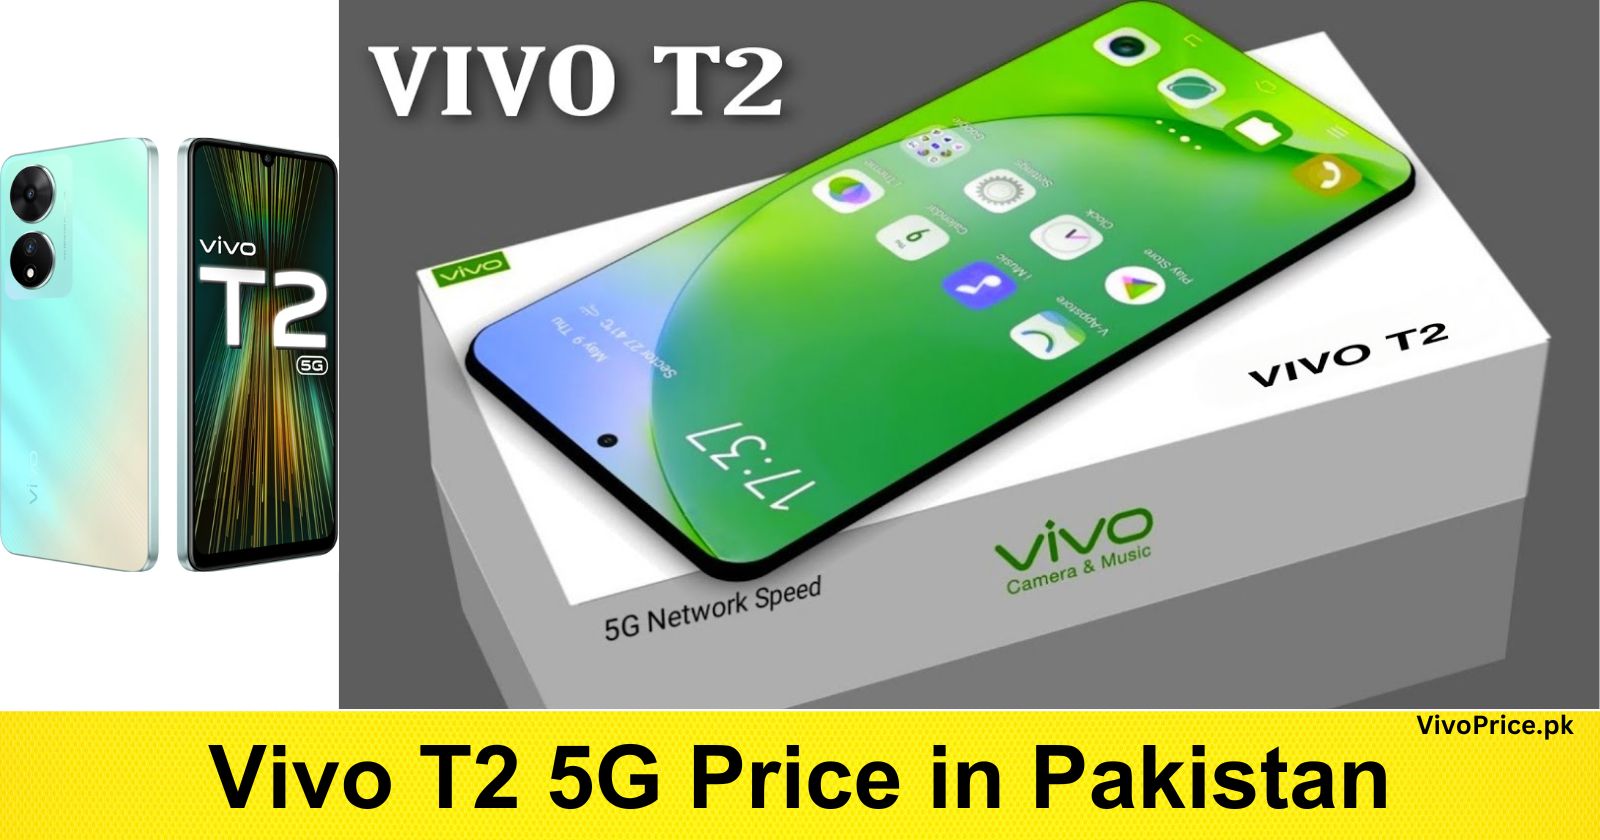 Vivo T2 5G Price in Pakistan | VivoPrice.pk